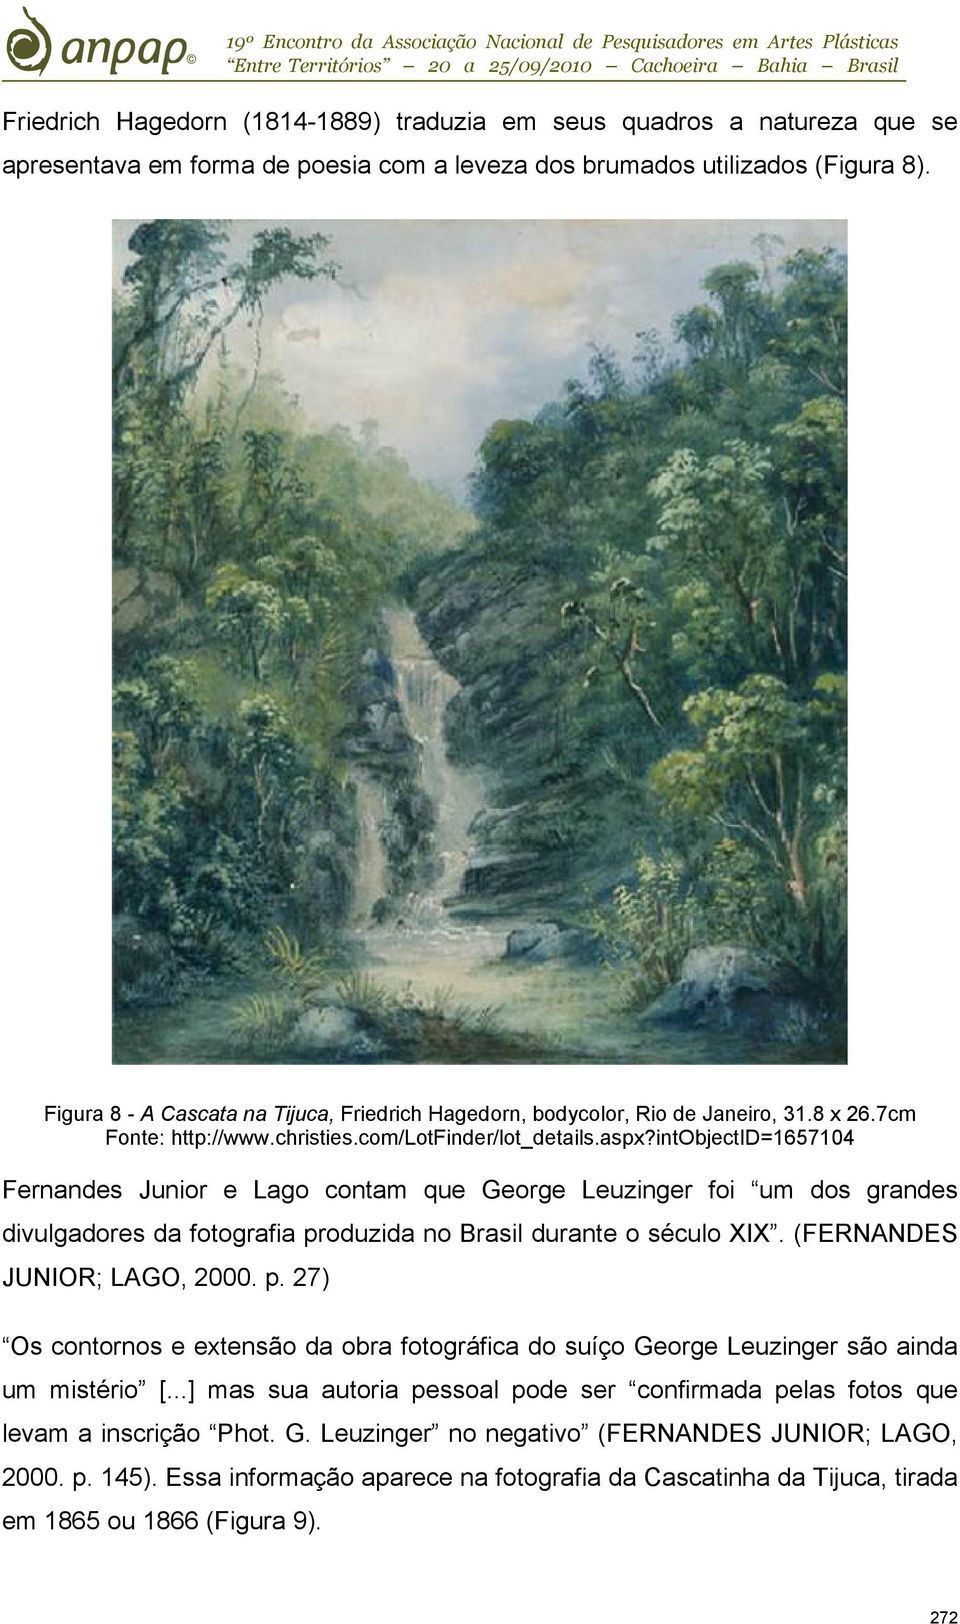 intobjectid=1657104 Fernandes Junior e Lago contam que George Leuzinger foi um dos grandes divulgadores da fotografia pr